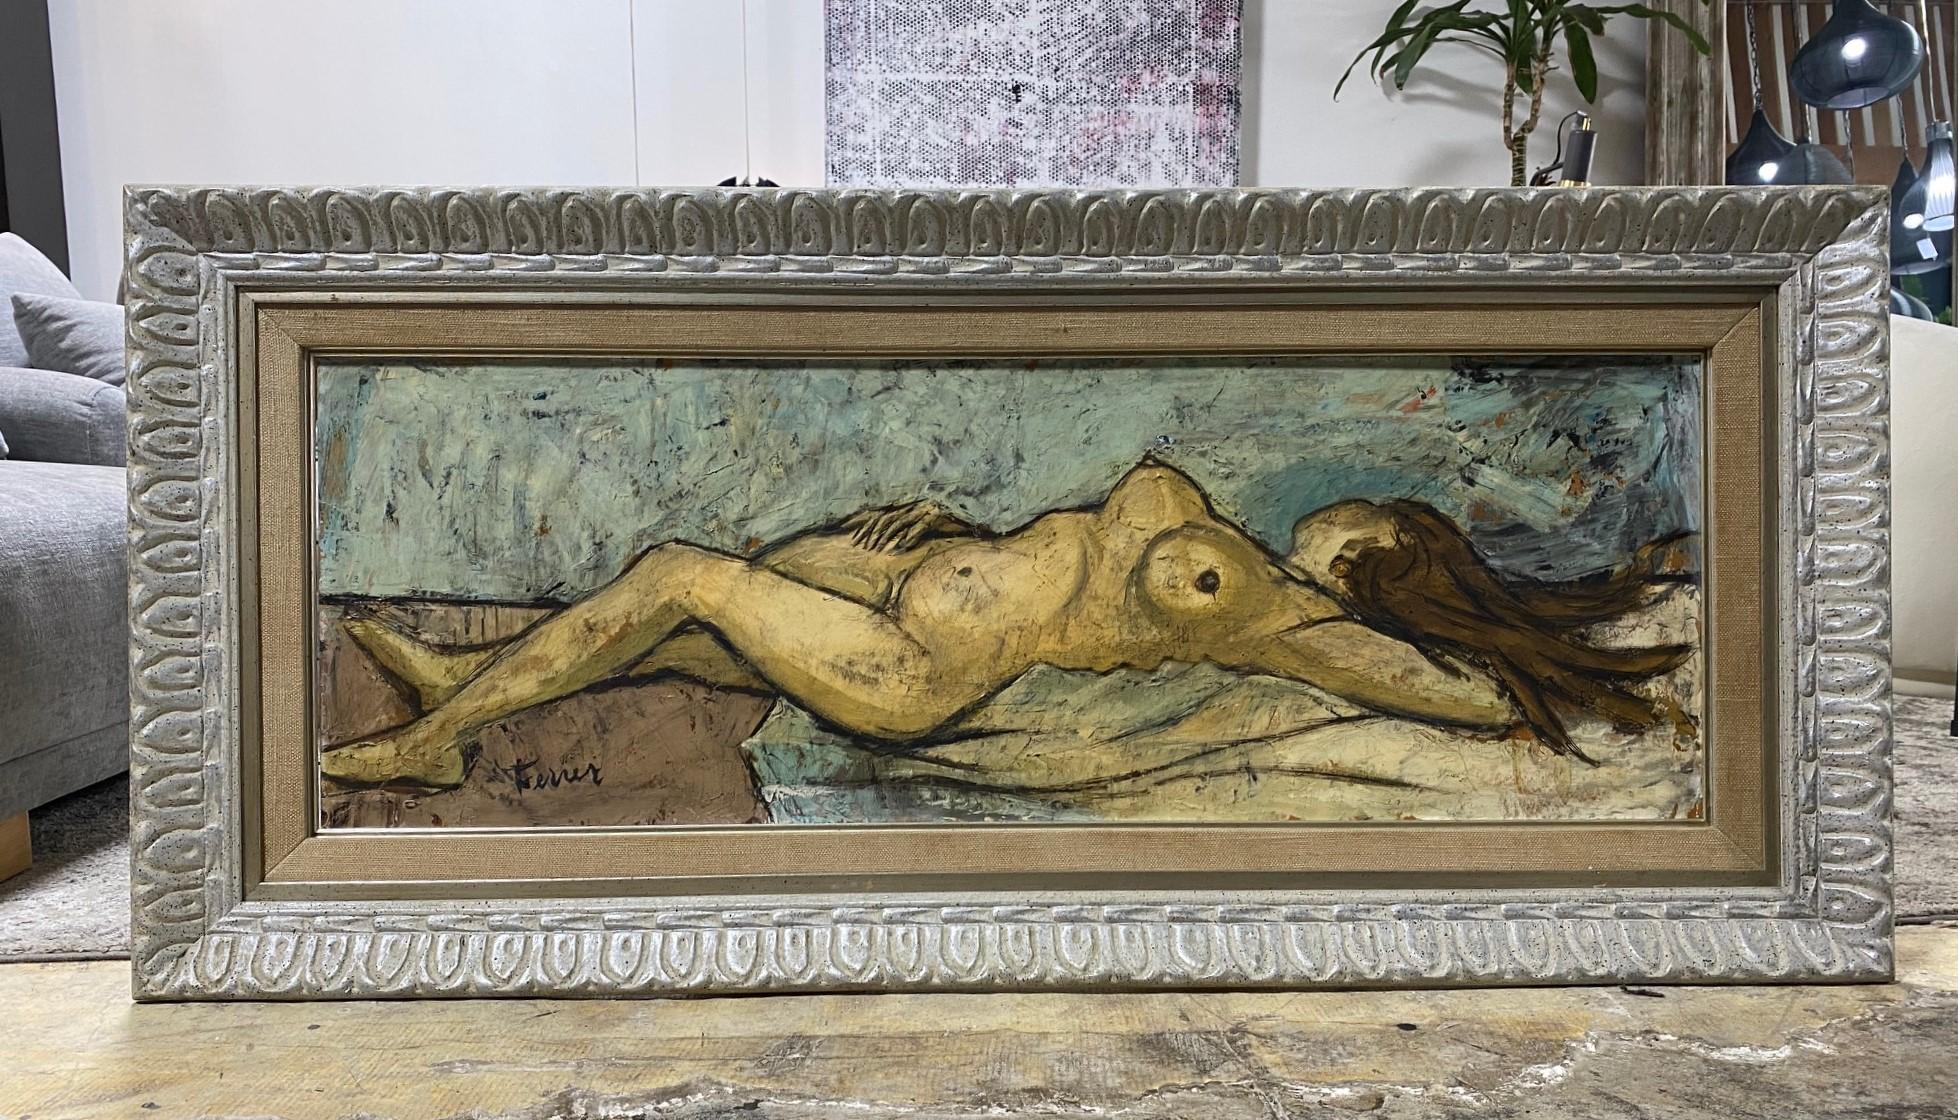 Un bello, atractivo y algo raro cuadro original de gran tamaño pintado al óleo sobre tabla con desnudo por el artista francés Charles Levier (1920-2003). 

Levier nació en 1920 de padre francés y madre estadounidense en Córcega. A los 17 años,